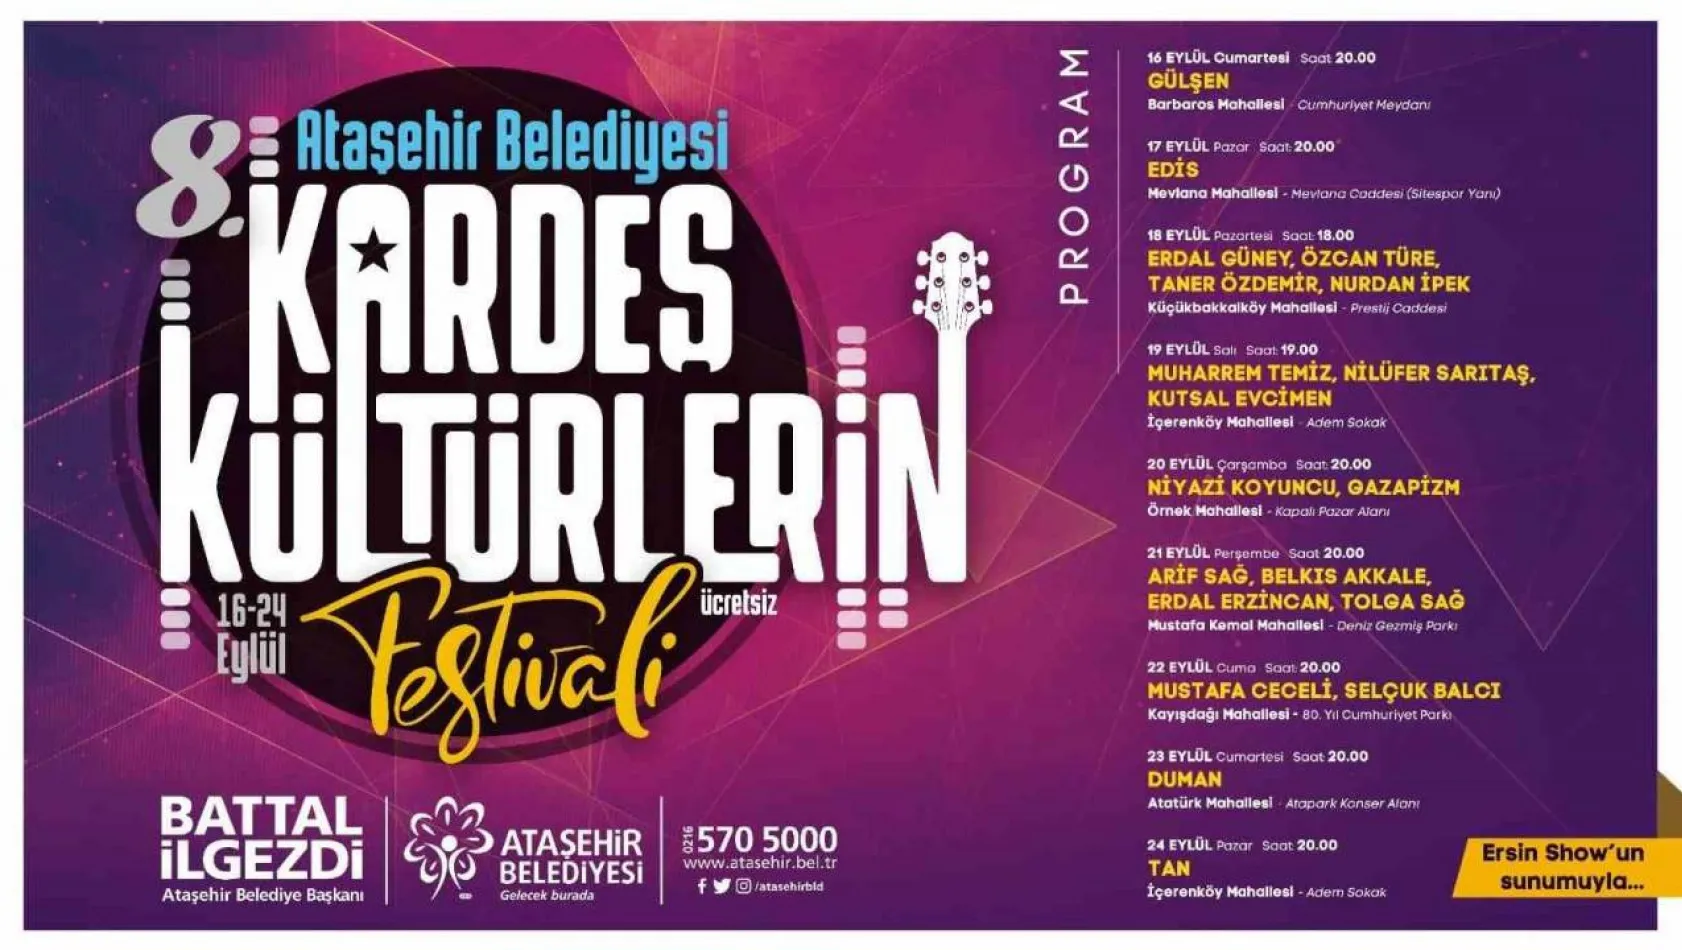 Ataşehir'de 'Kardeş Kültürlerin Festivali' 16 Eylül'de başlıyor